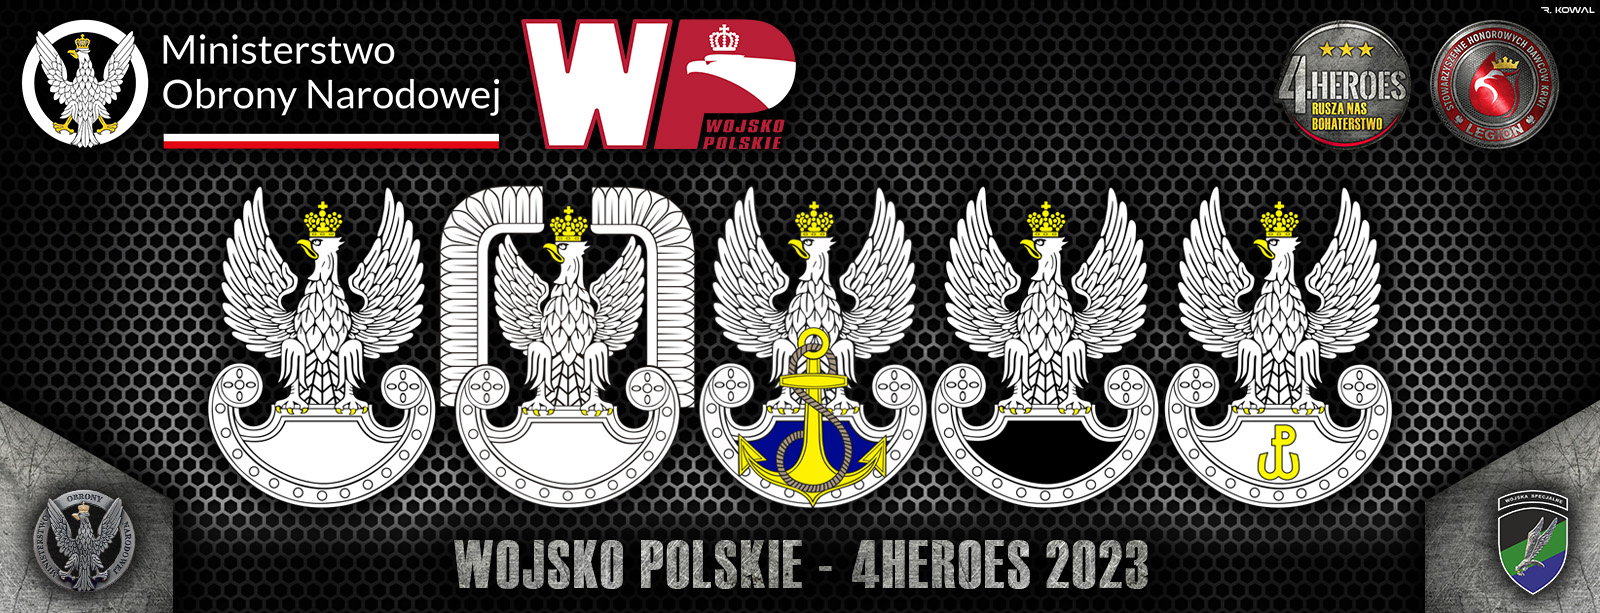 nagrody sponsorzy niepodlegla mamy we krwi polska zbrojna krwiodawstwo wojsko polskie legionhdk